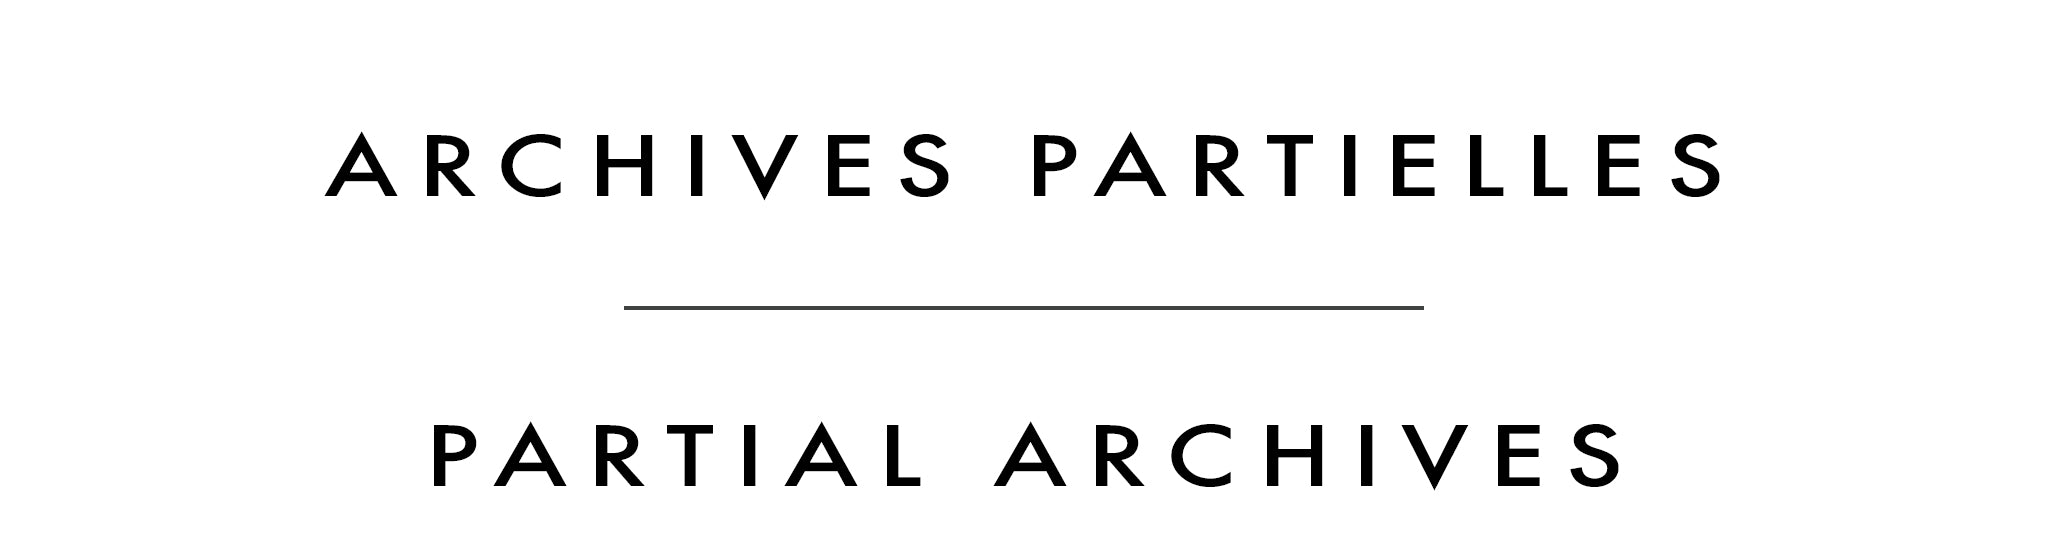 Archives partielles | Partial Archives | Claudette Castonguay